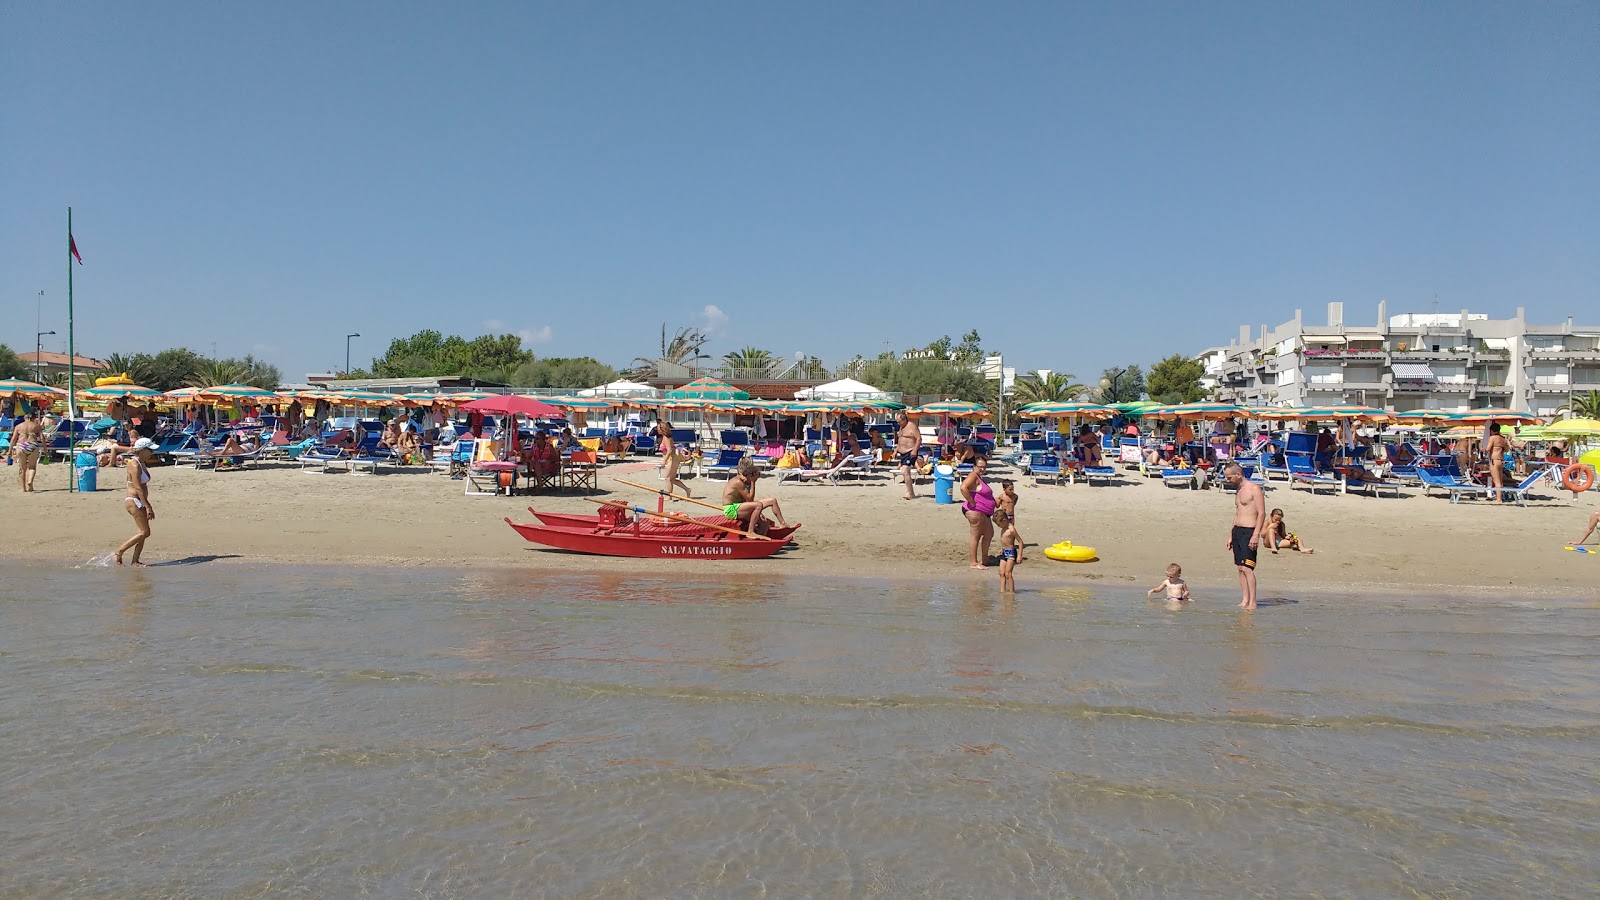 Foto de Spiaggia di Villa Rosa - lugar popular entre los conocedores del relax